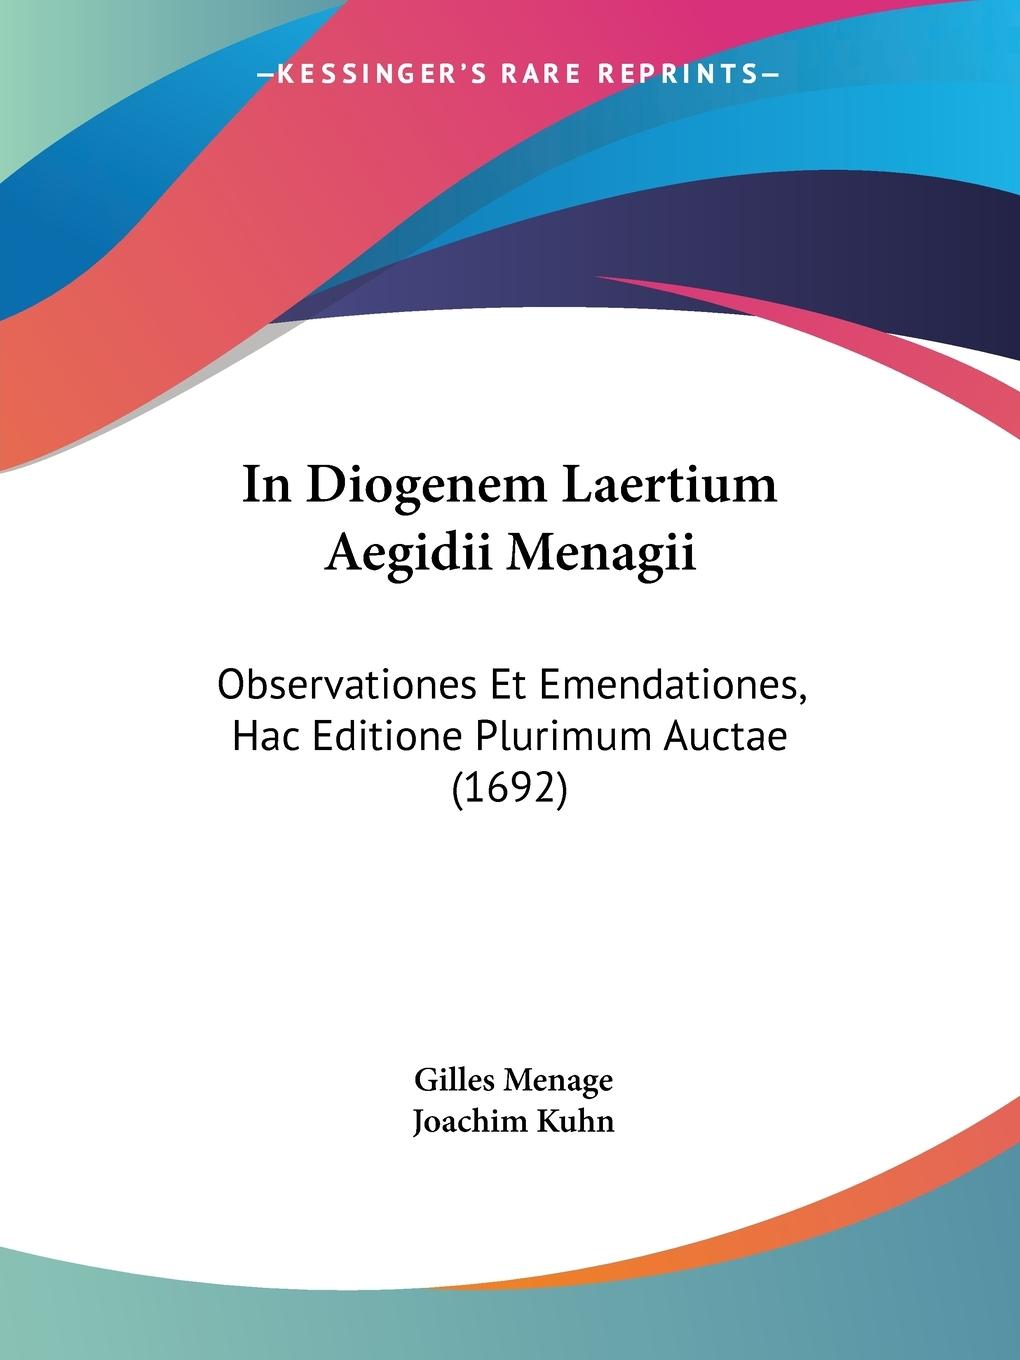 In Diogenem Laertium Aegidii Menagii - Menage, Gilles Kuhn, Joachim